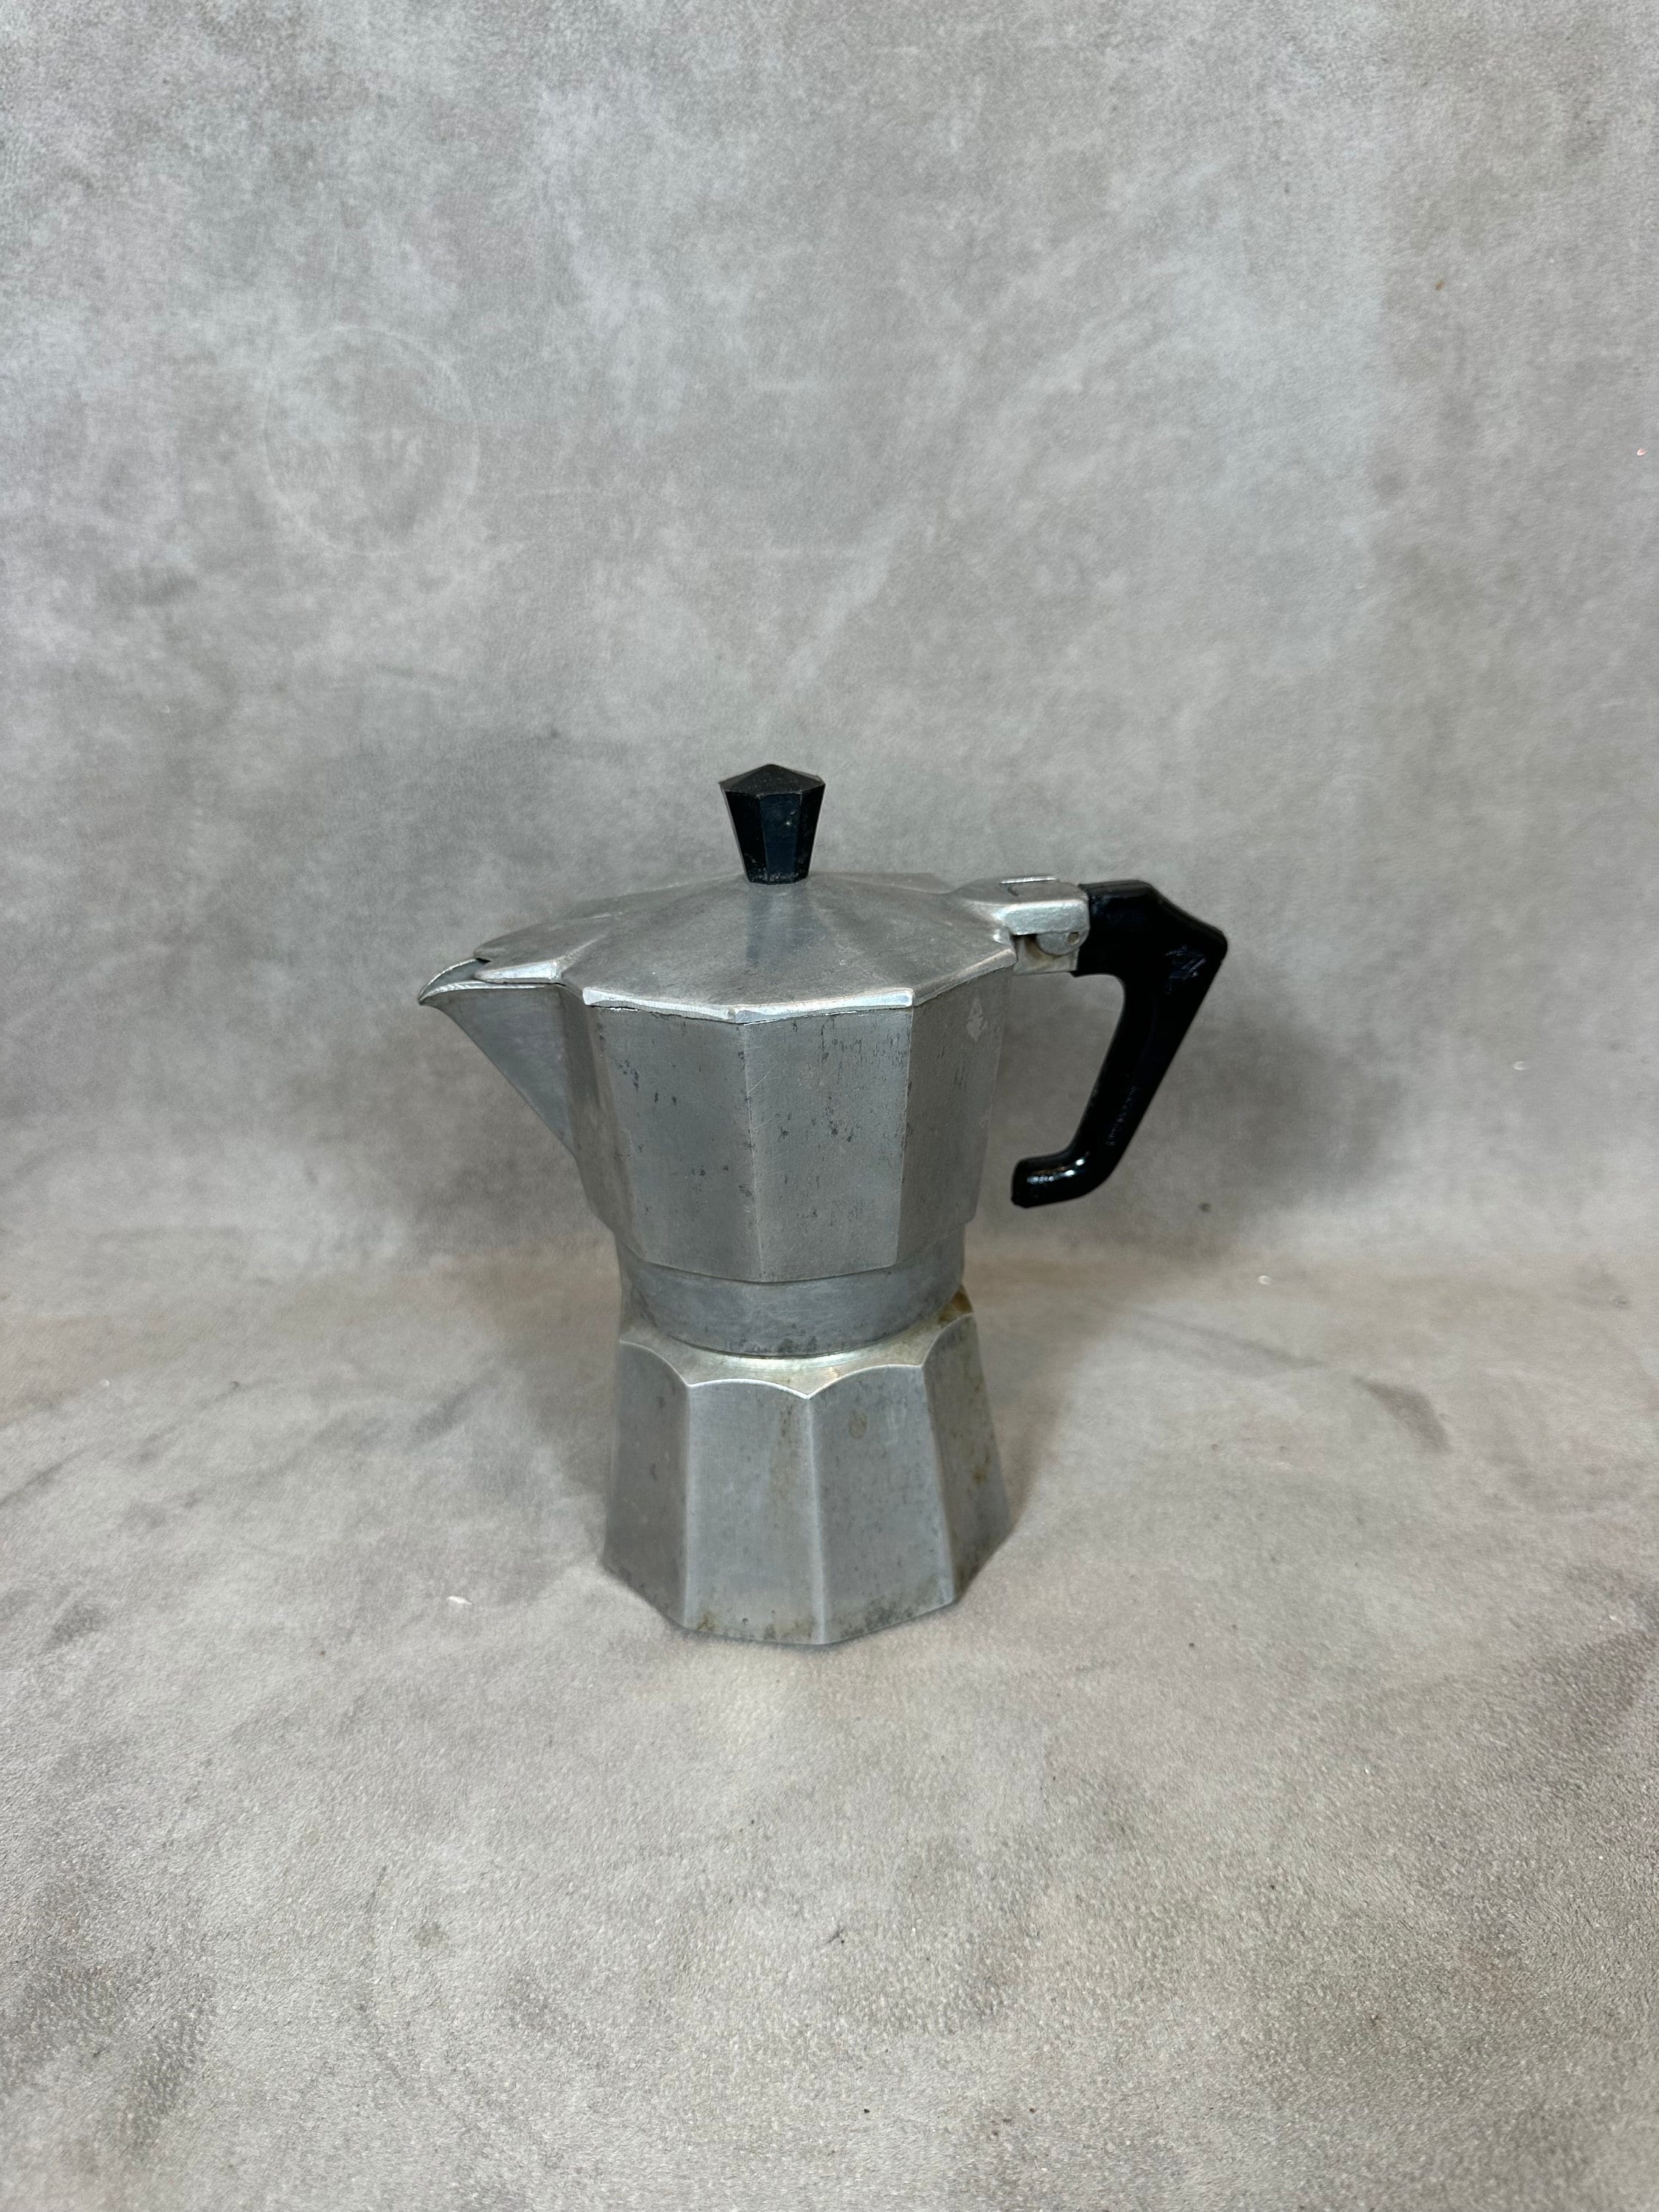 Moka Pot Italian Coffee Machine Espresso Aluminum Geyser Latte Maker